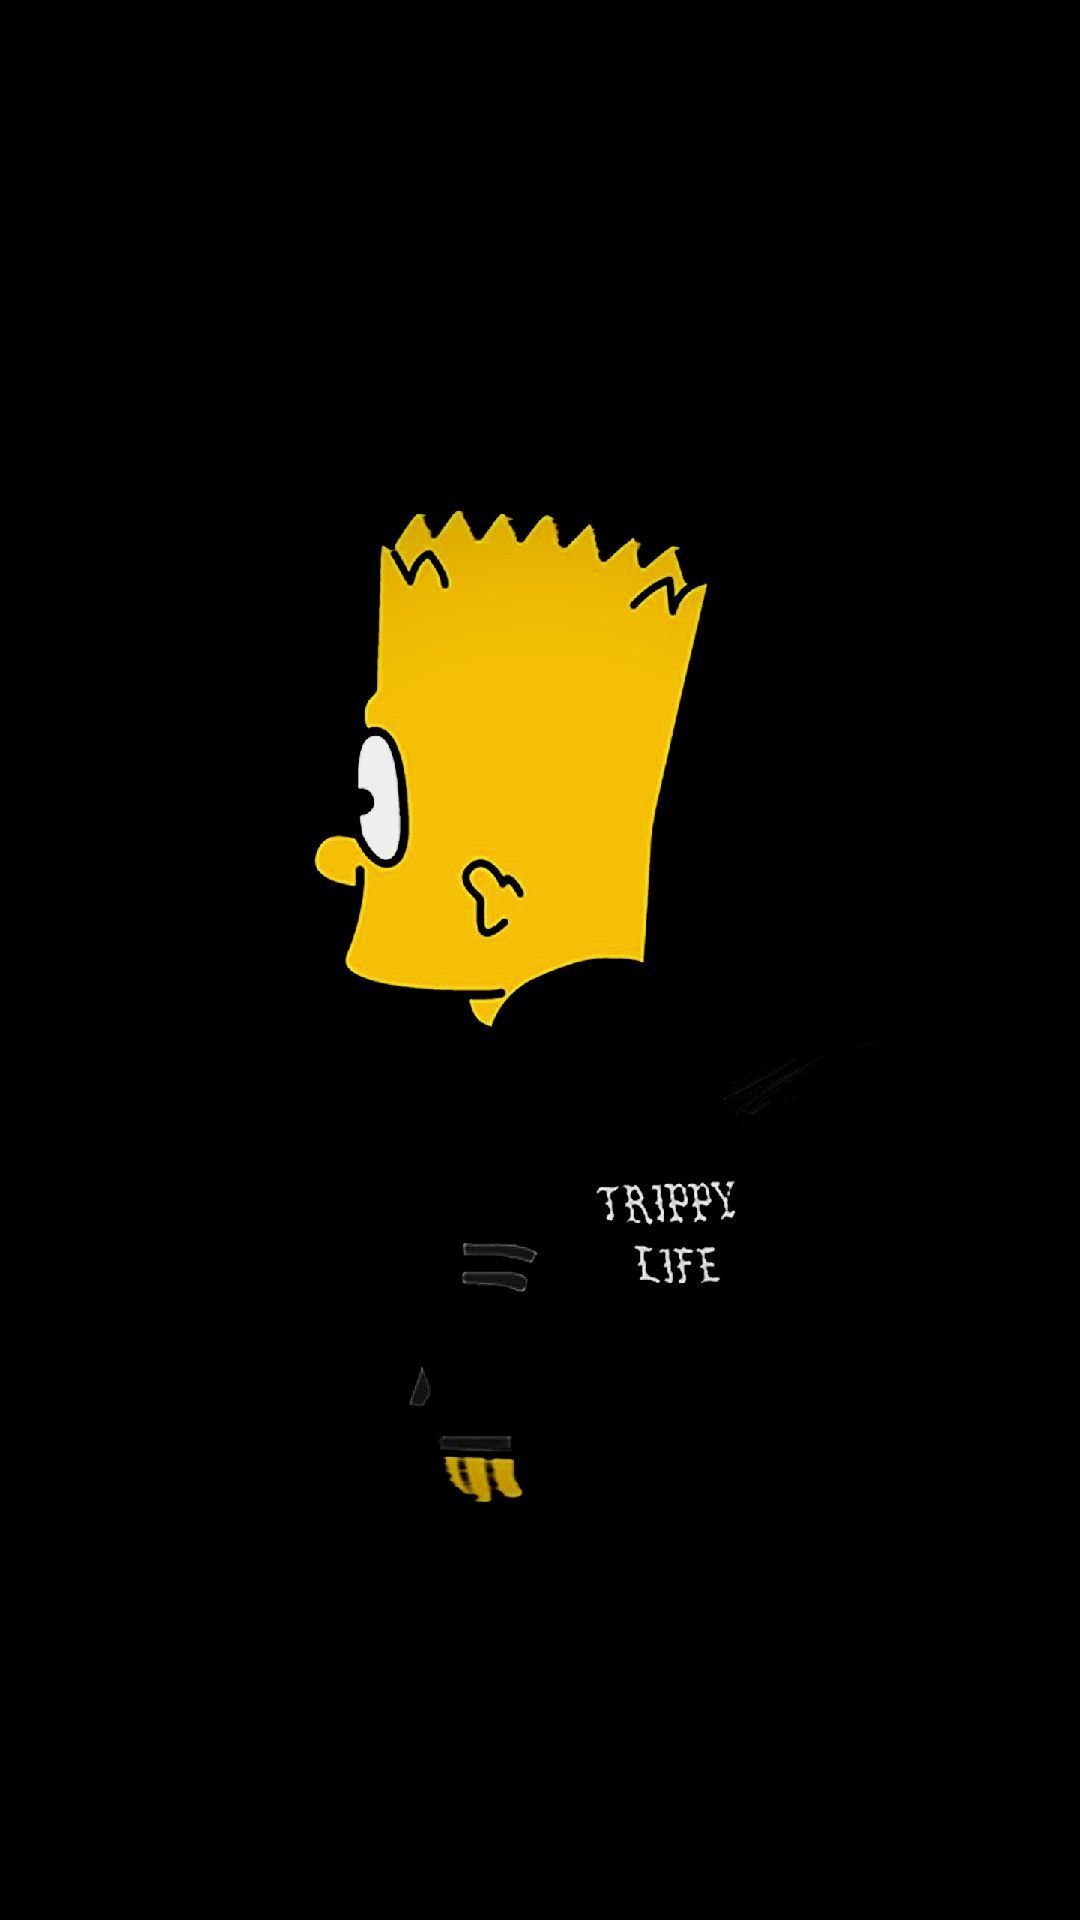 Không có gì tuyệt vời hơn khi bạn trang trí màn hình của mình bằng hình nền Simpson buồn đầy cảm hứng và tình cảm.